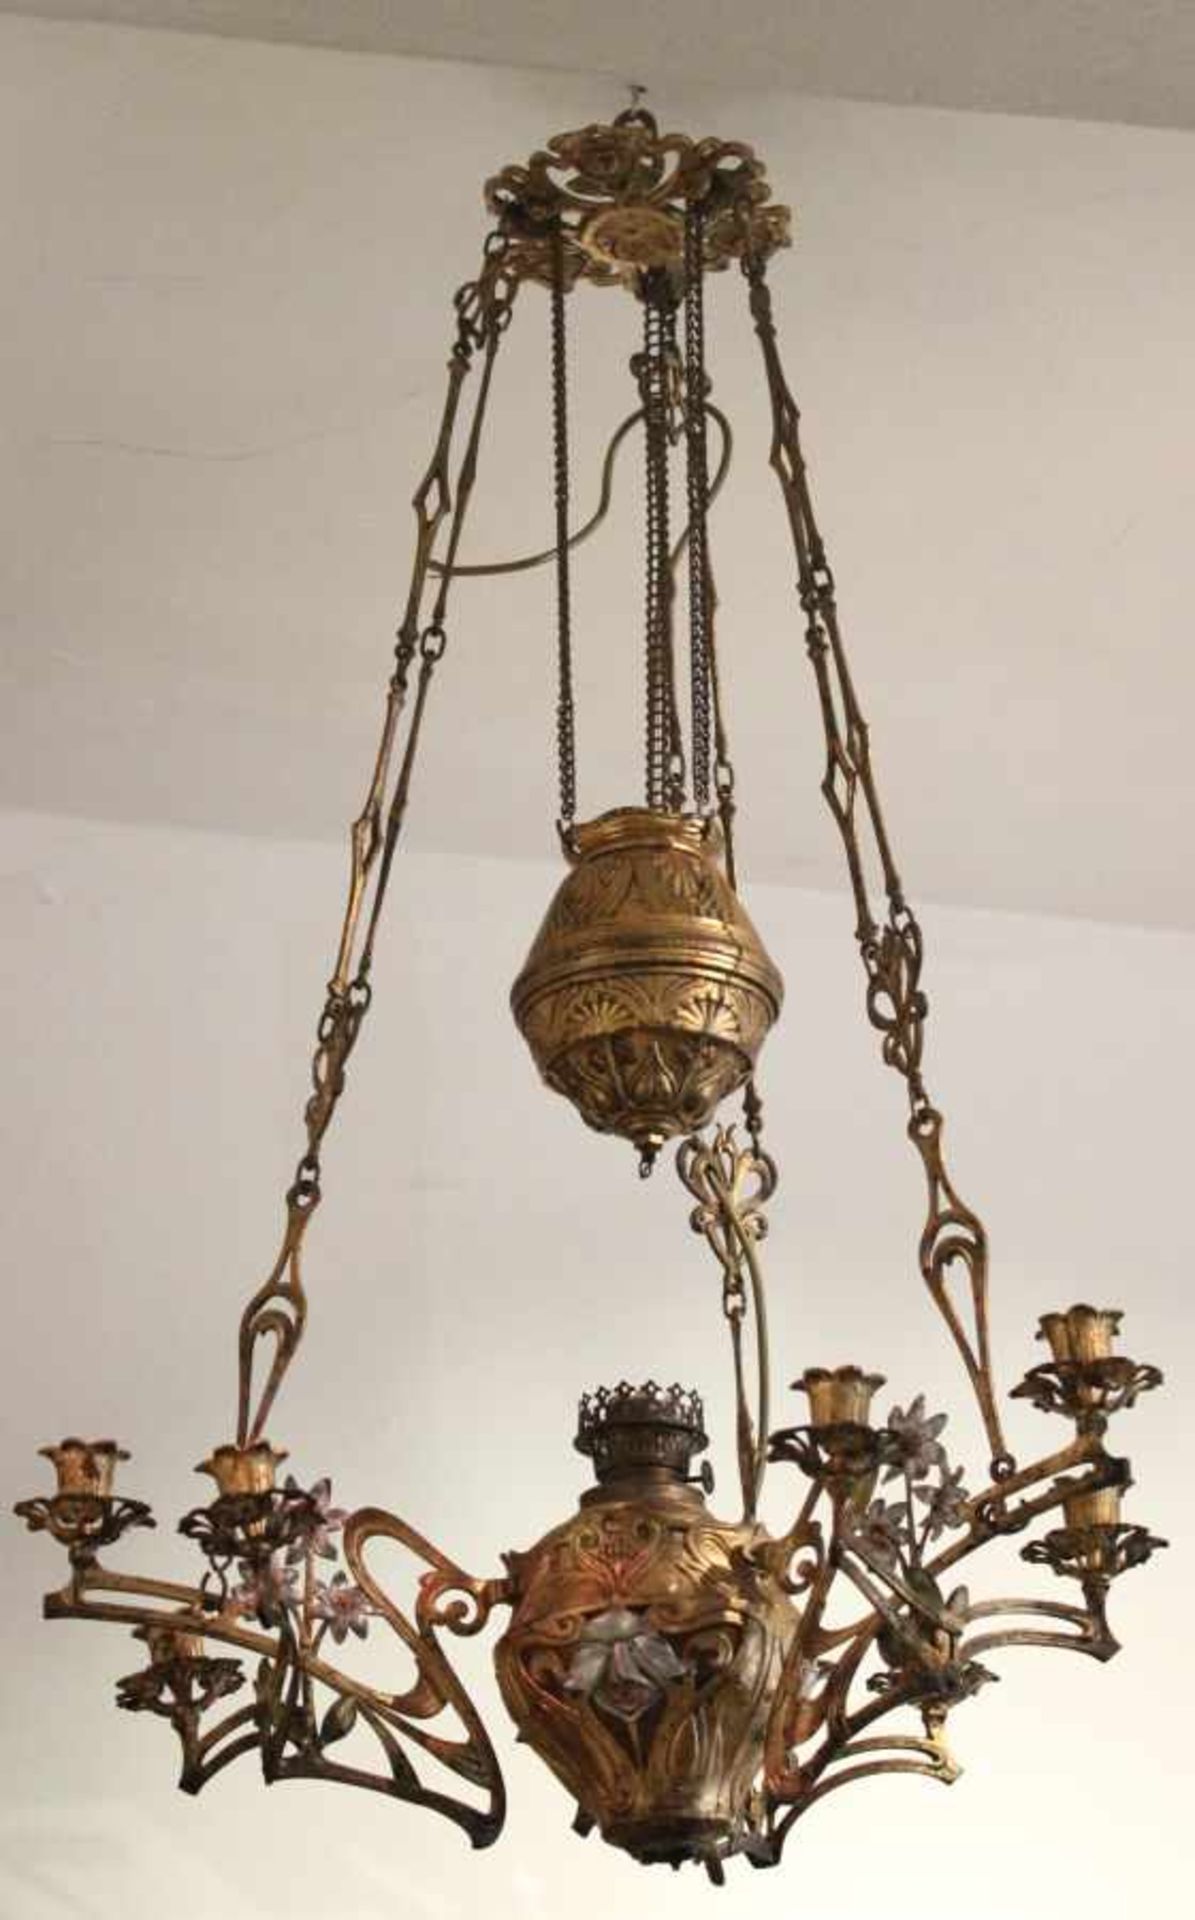 Deckenlampe - Jugendstil um 1910 Metall vergoldet, höhenverstellbar über Gewichtszug, reich verziert